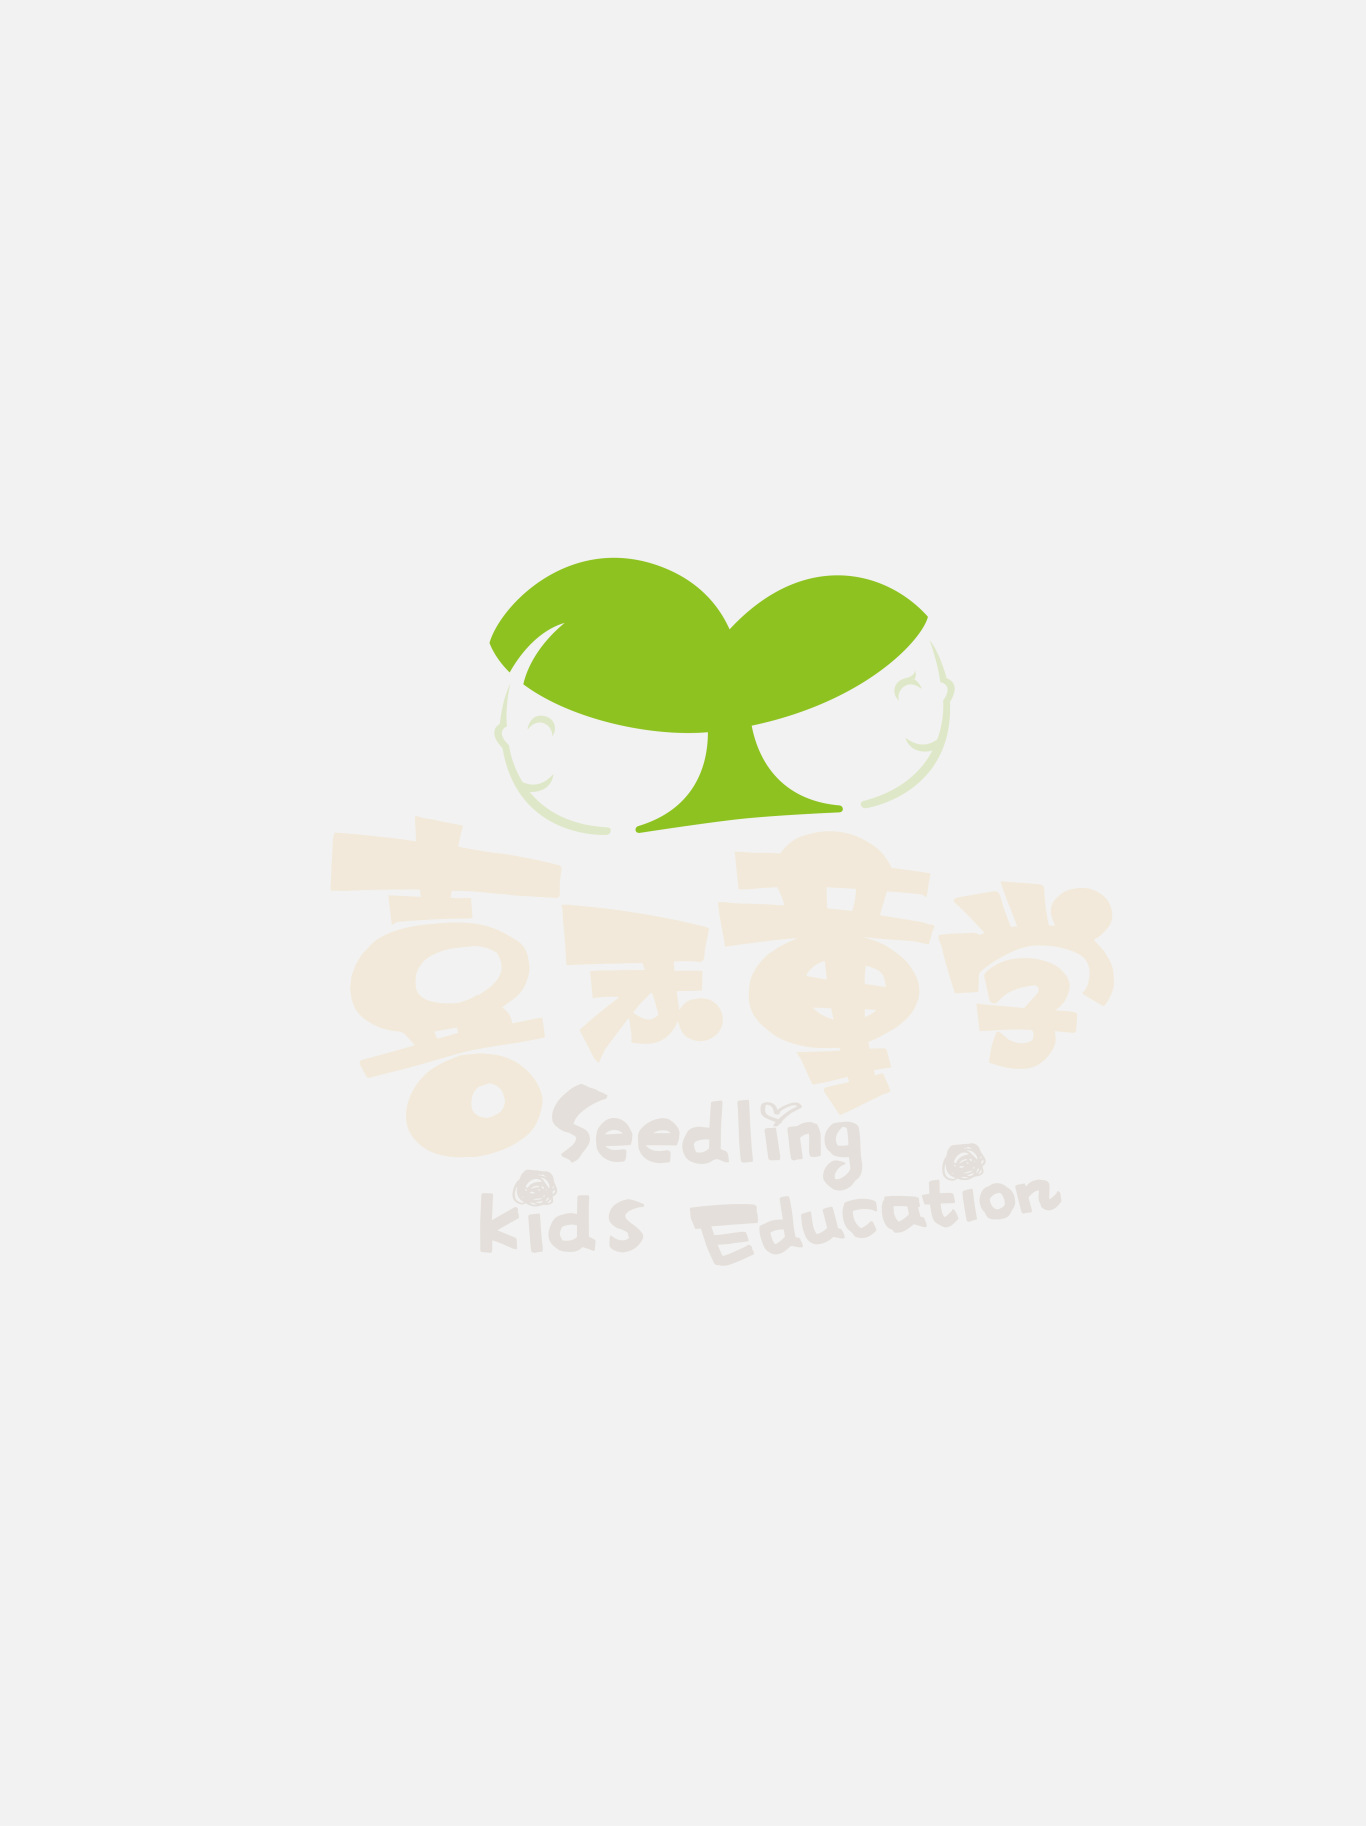 喜禾同学-少儿培训logo图1